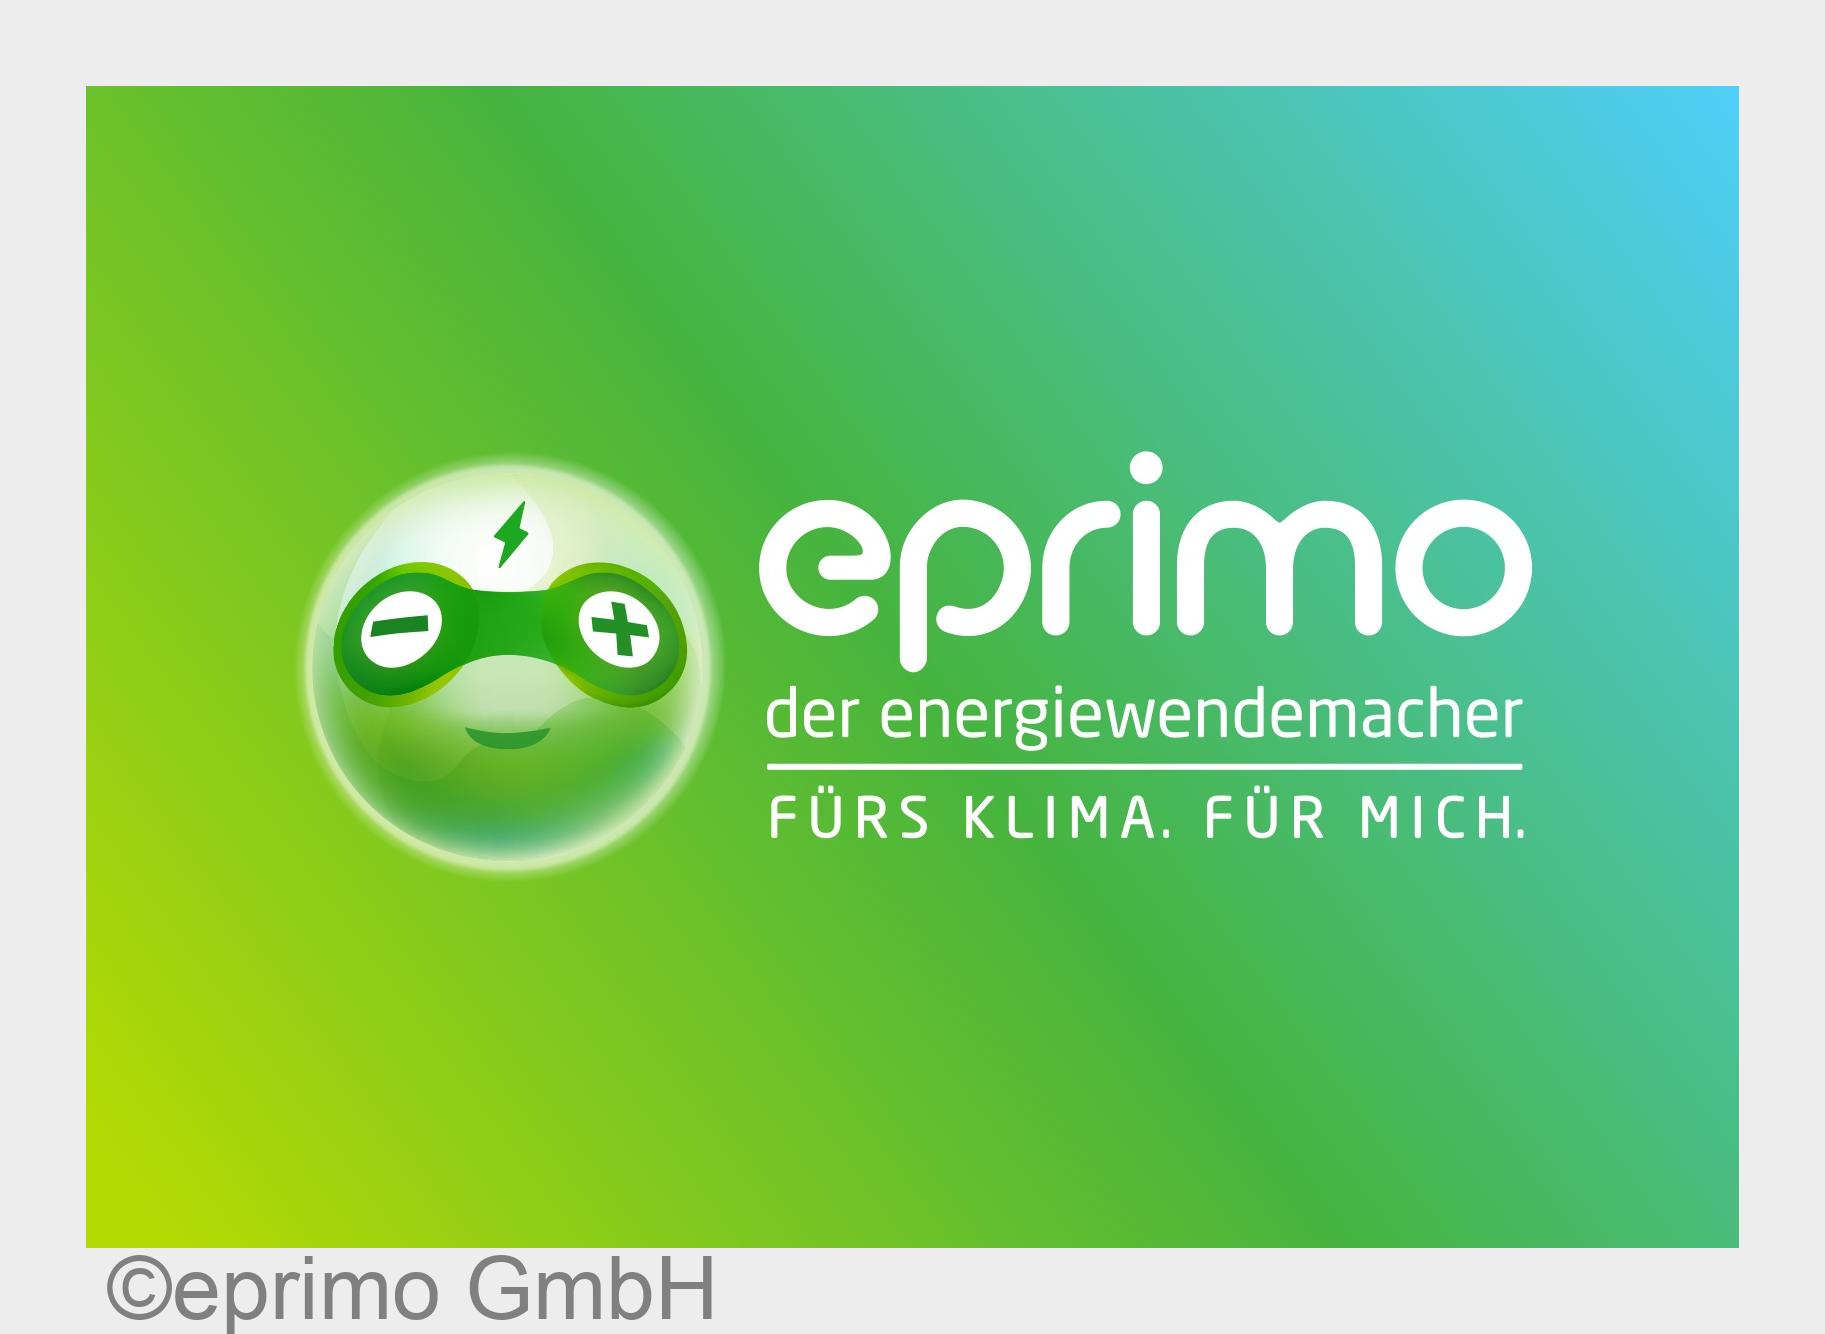 eprimo ist nachhaltigster überregionaler Energieversorger und zugleich "Innovationschampion in der Nachhaltigkeit"